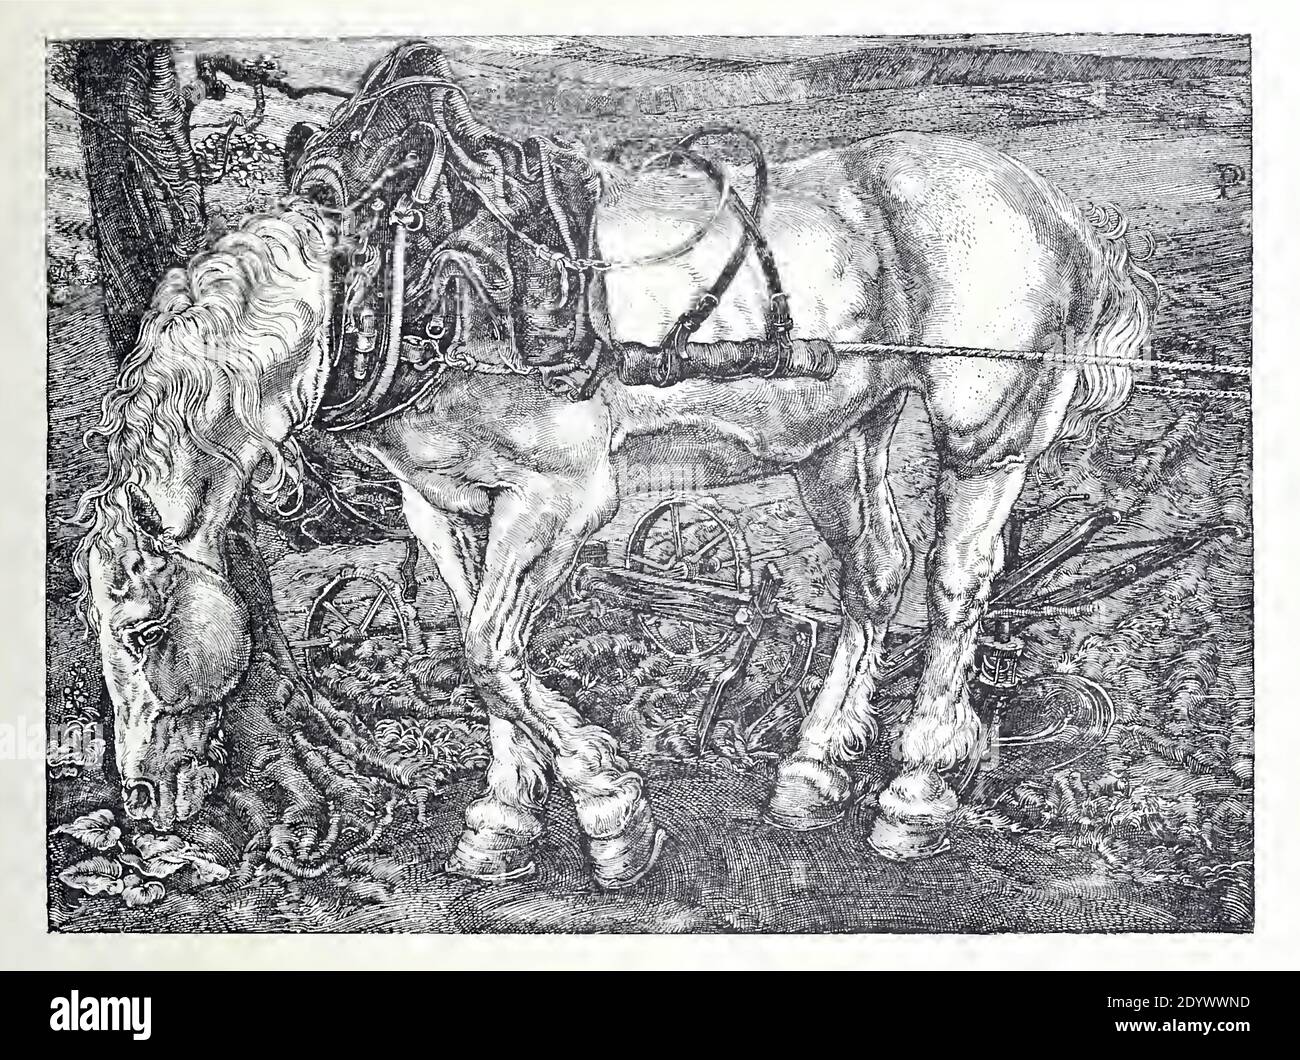 La stampa antica d'epoca chiamata il Cavallo Bianco dall'artista olandese Pieter Dupont. Foto Stock